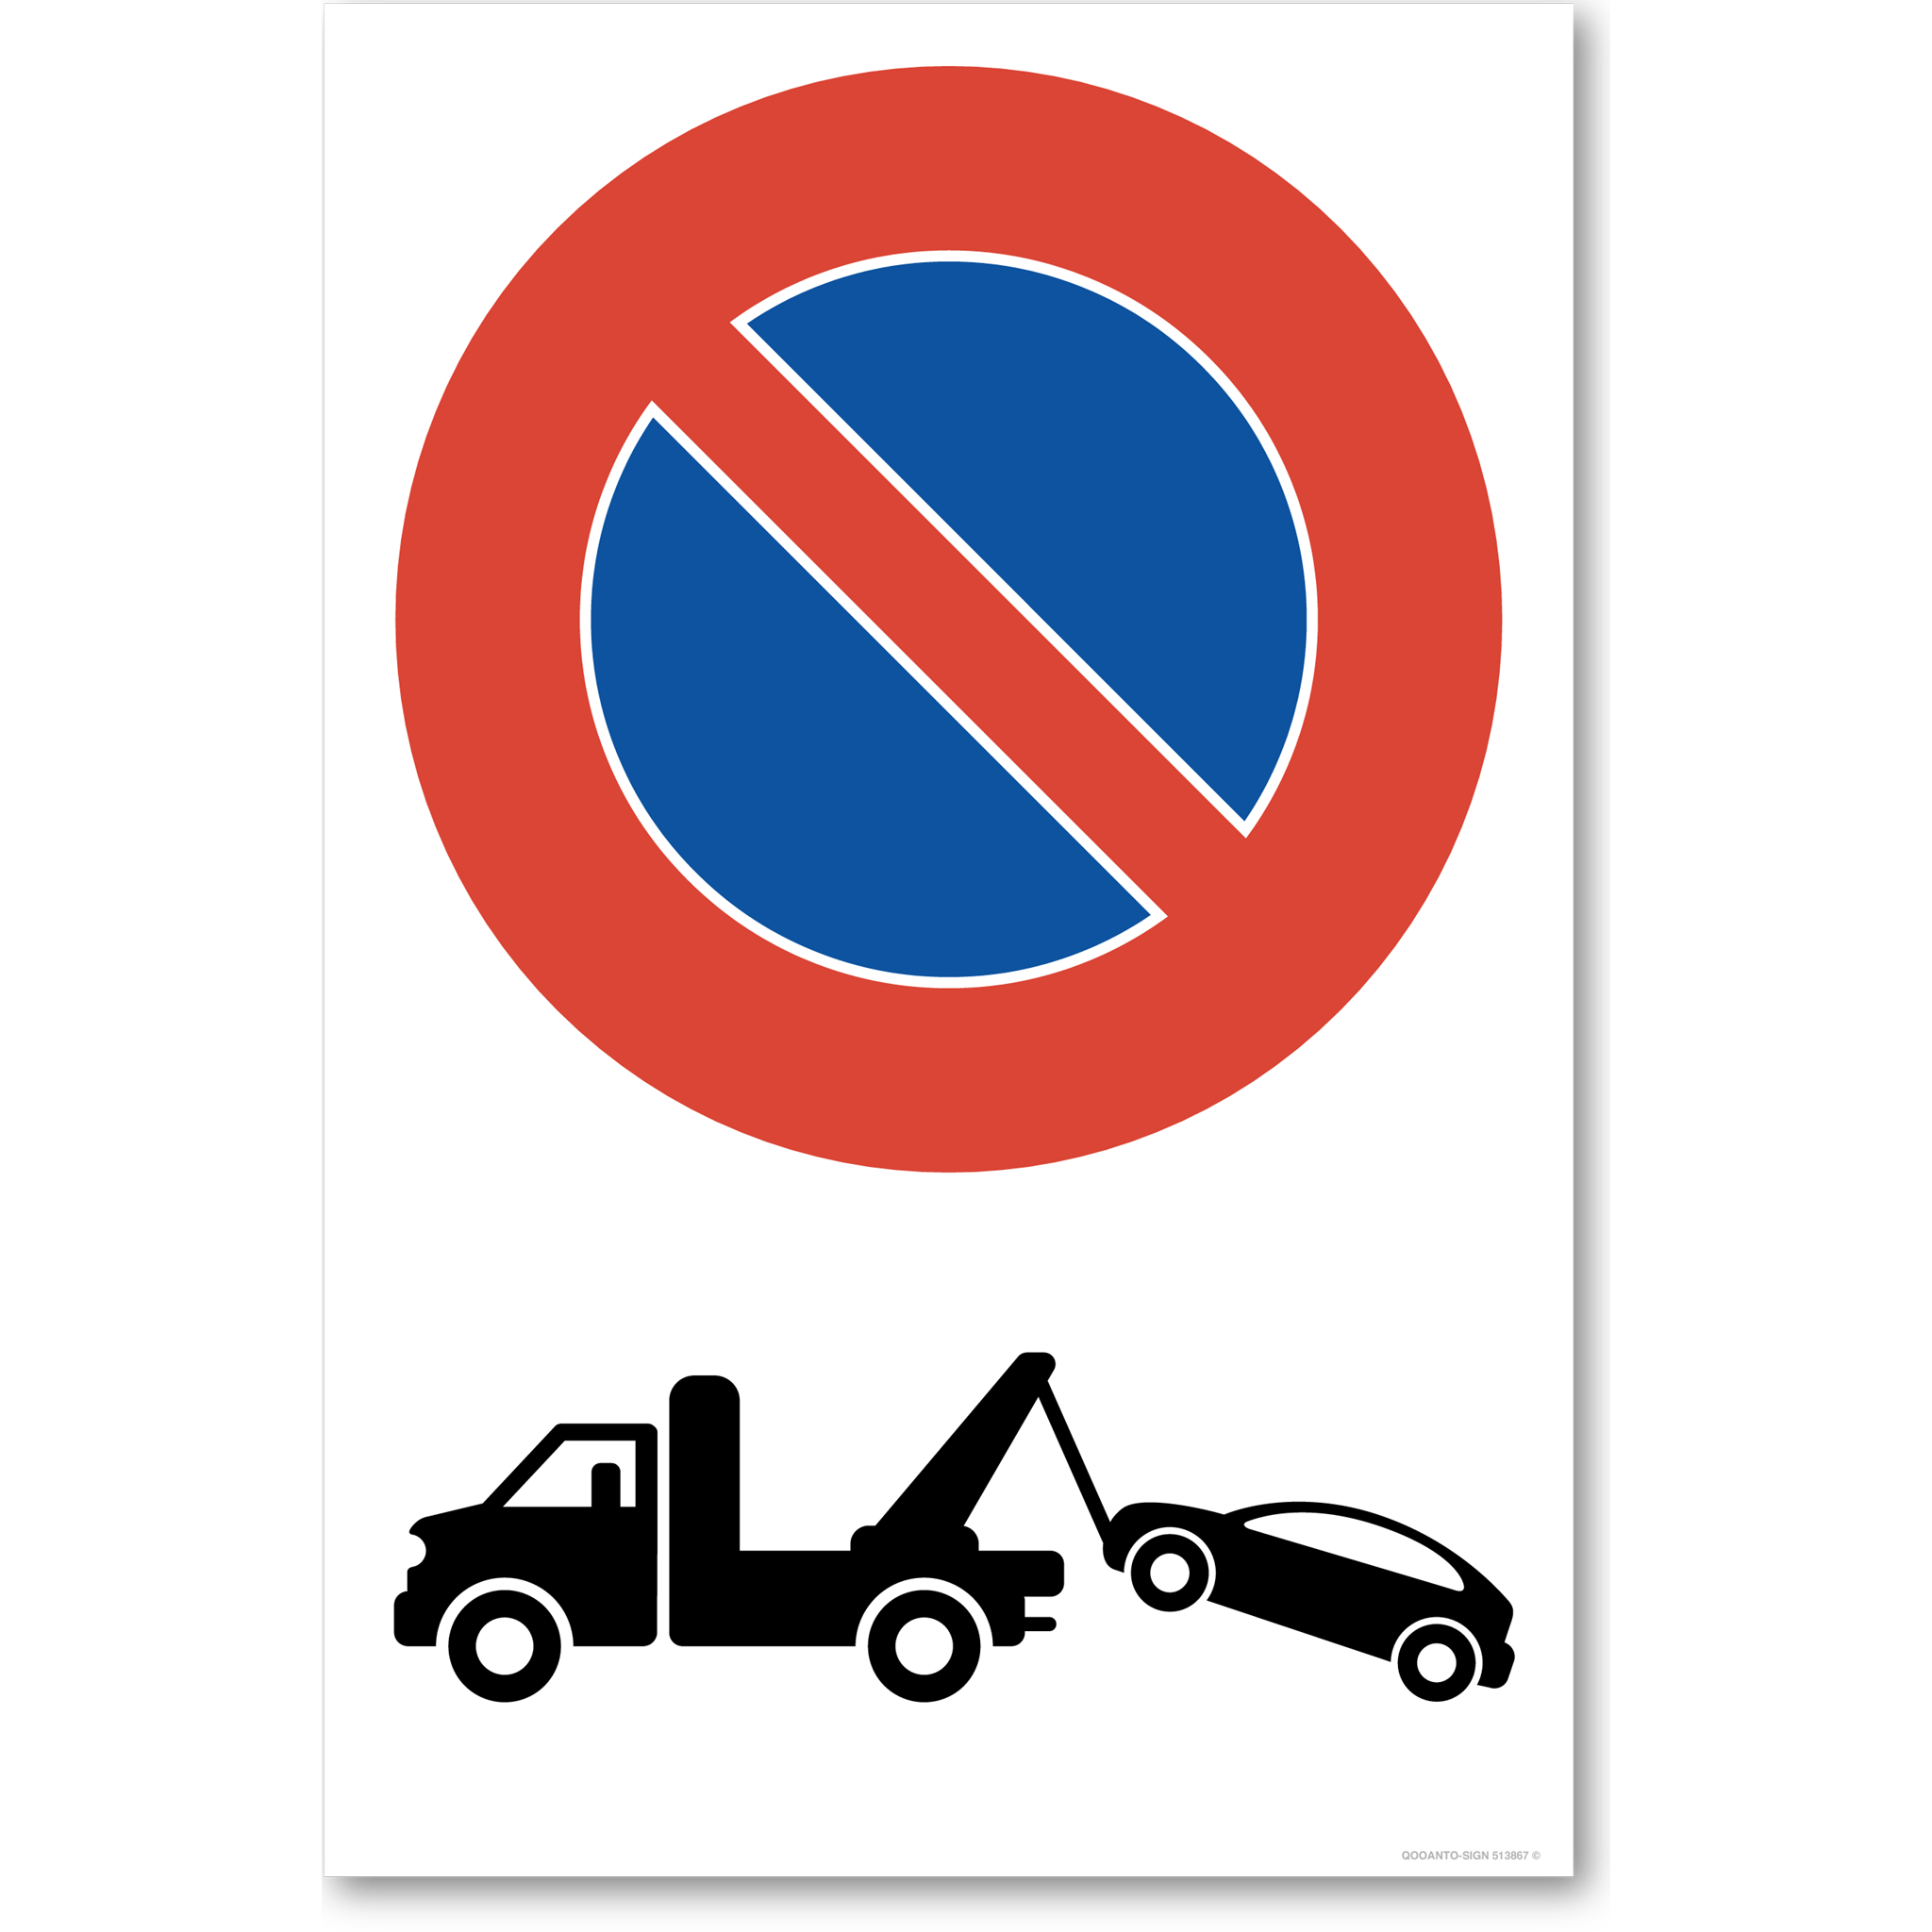 Abschleppwagen - Parkieren verboten - Parkverbotsschild hochformat